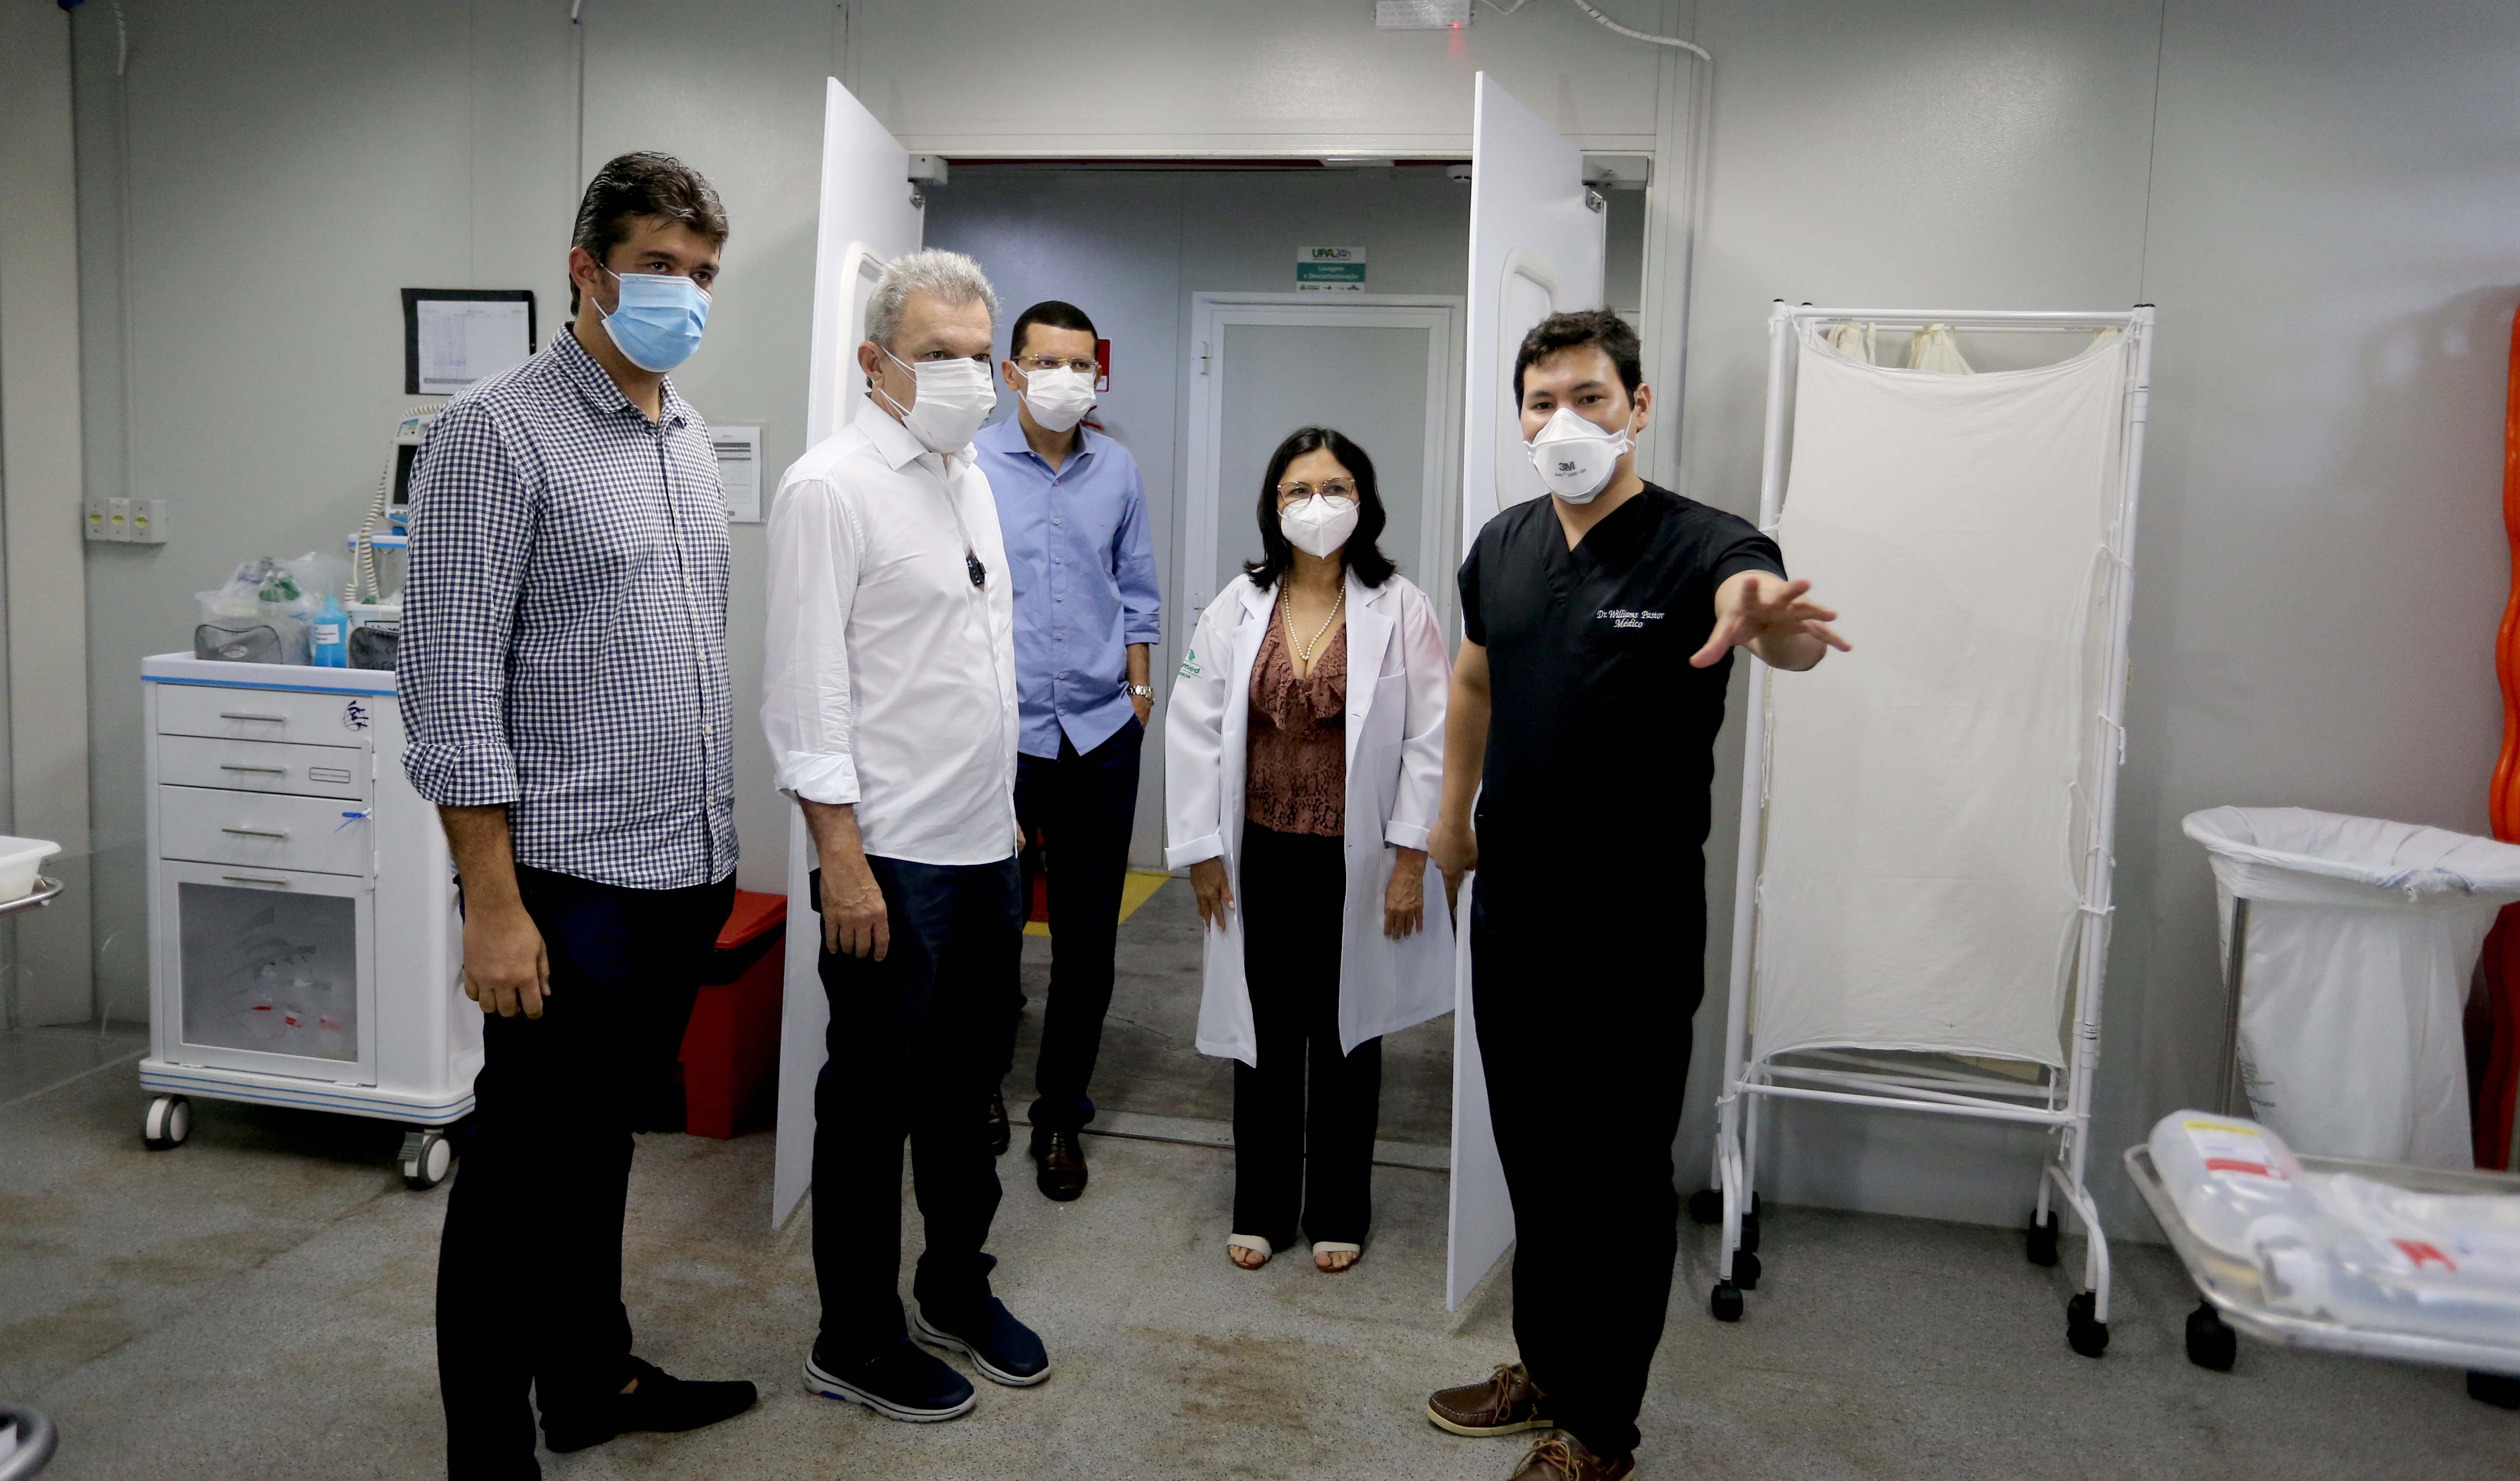 grupo de pessoas com máscara dentro de uma enfermaria